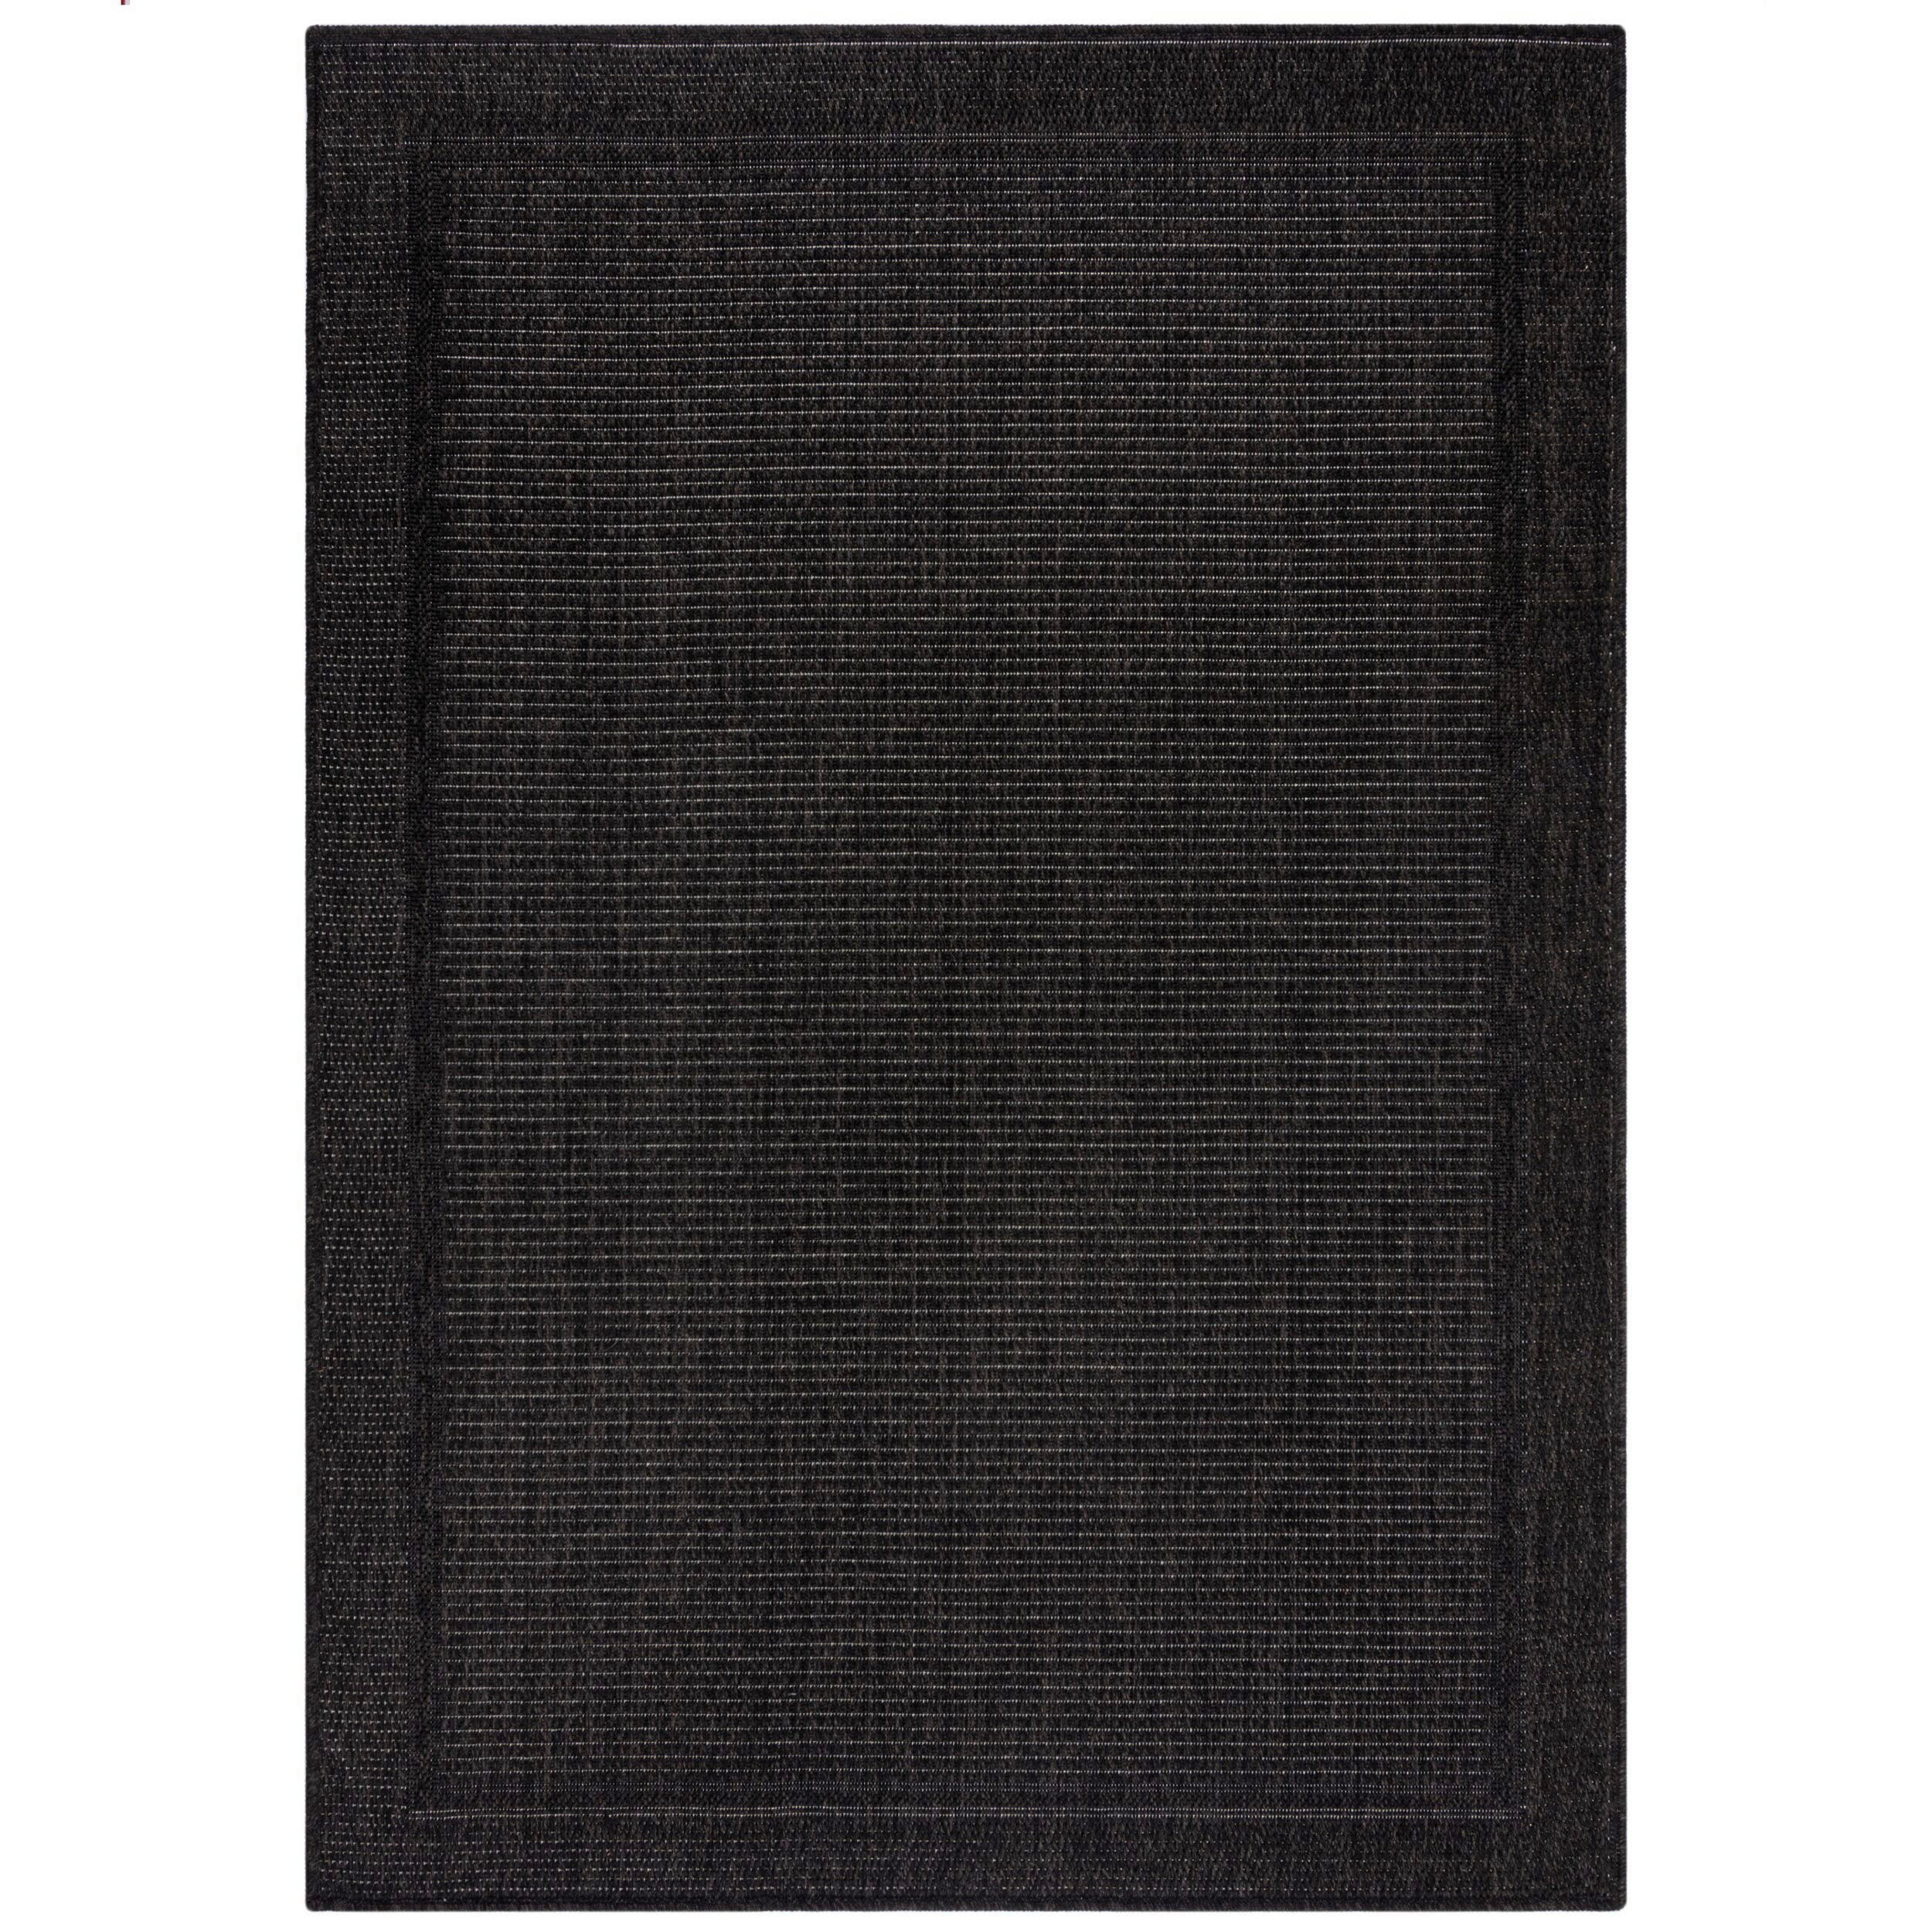 OUTDOORTEPPICH 133/170 cm Aruba Alfresco  - Grau, Basics, Textil (133/170cm)